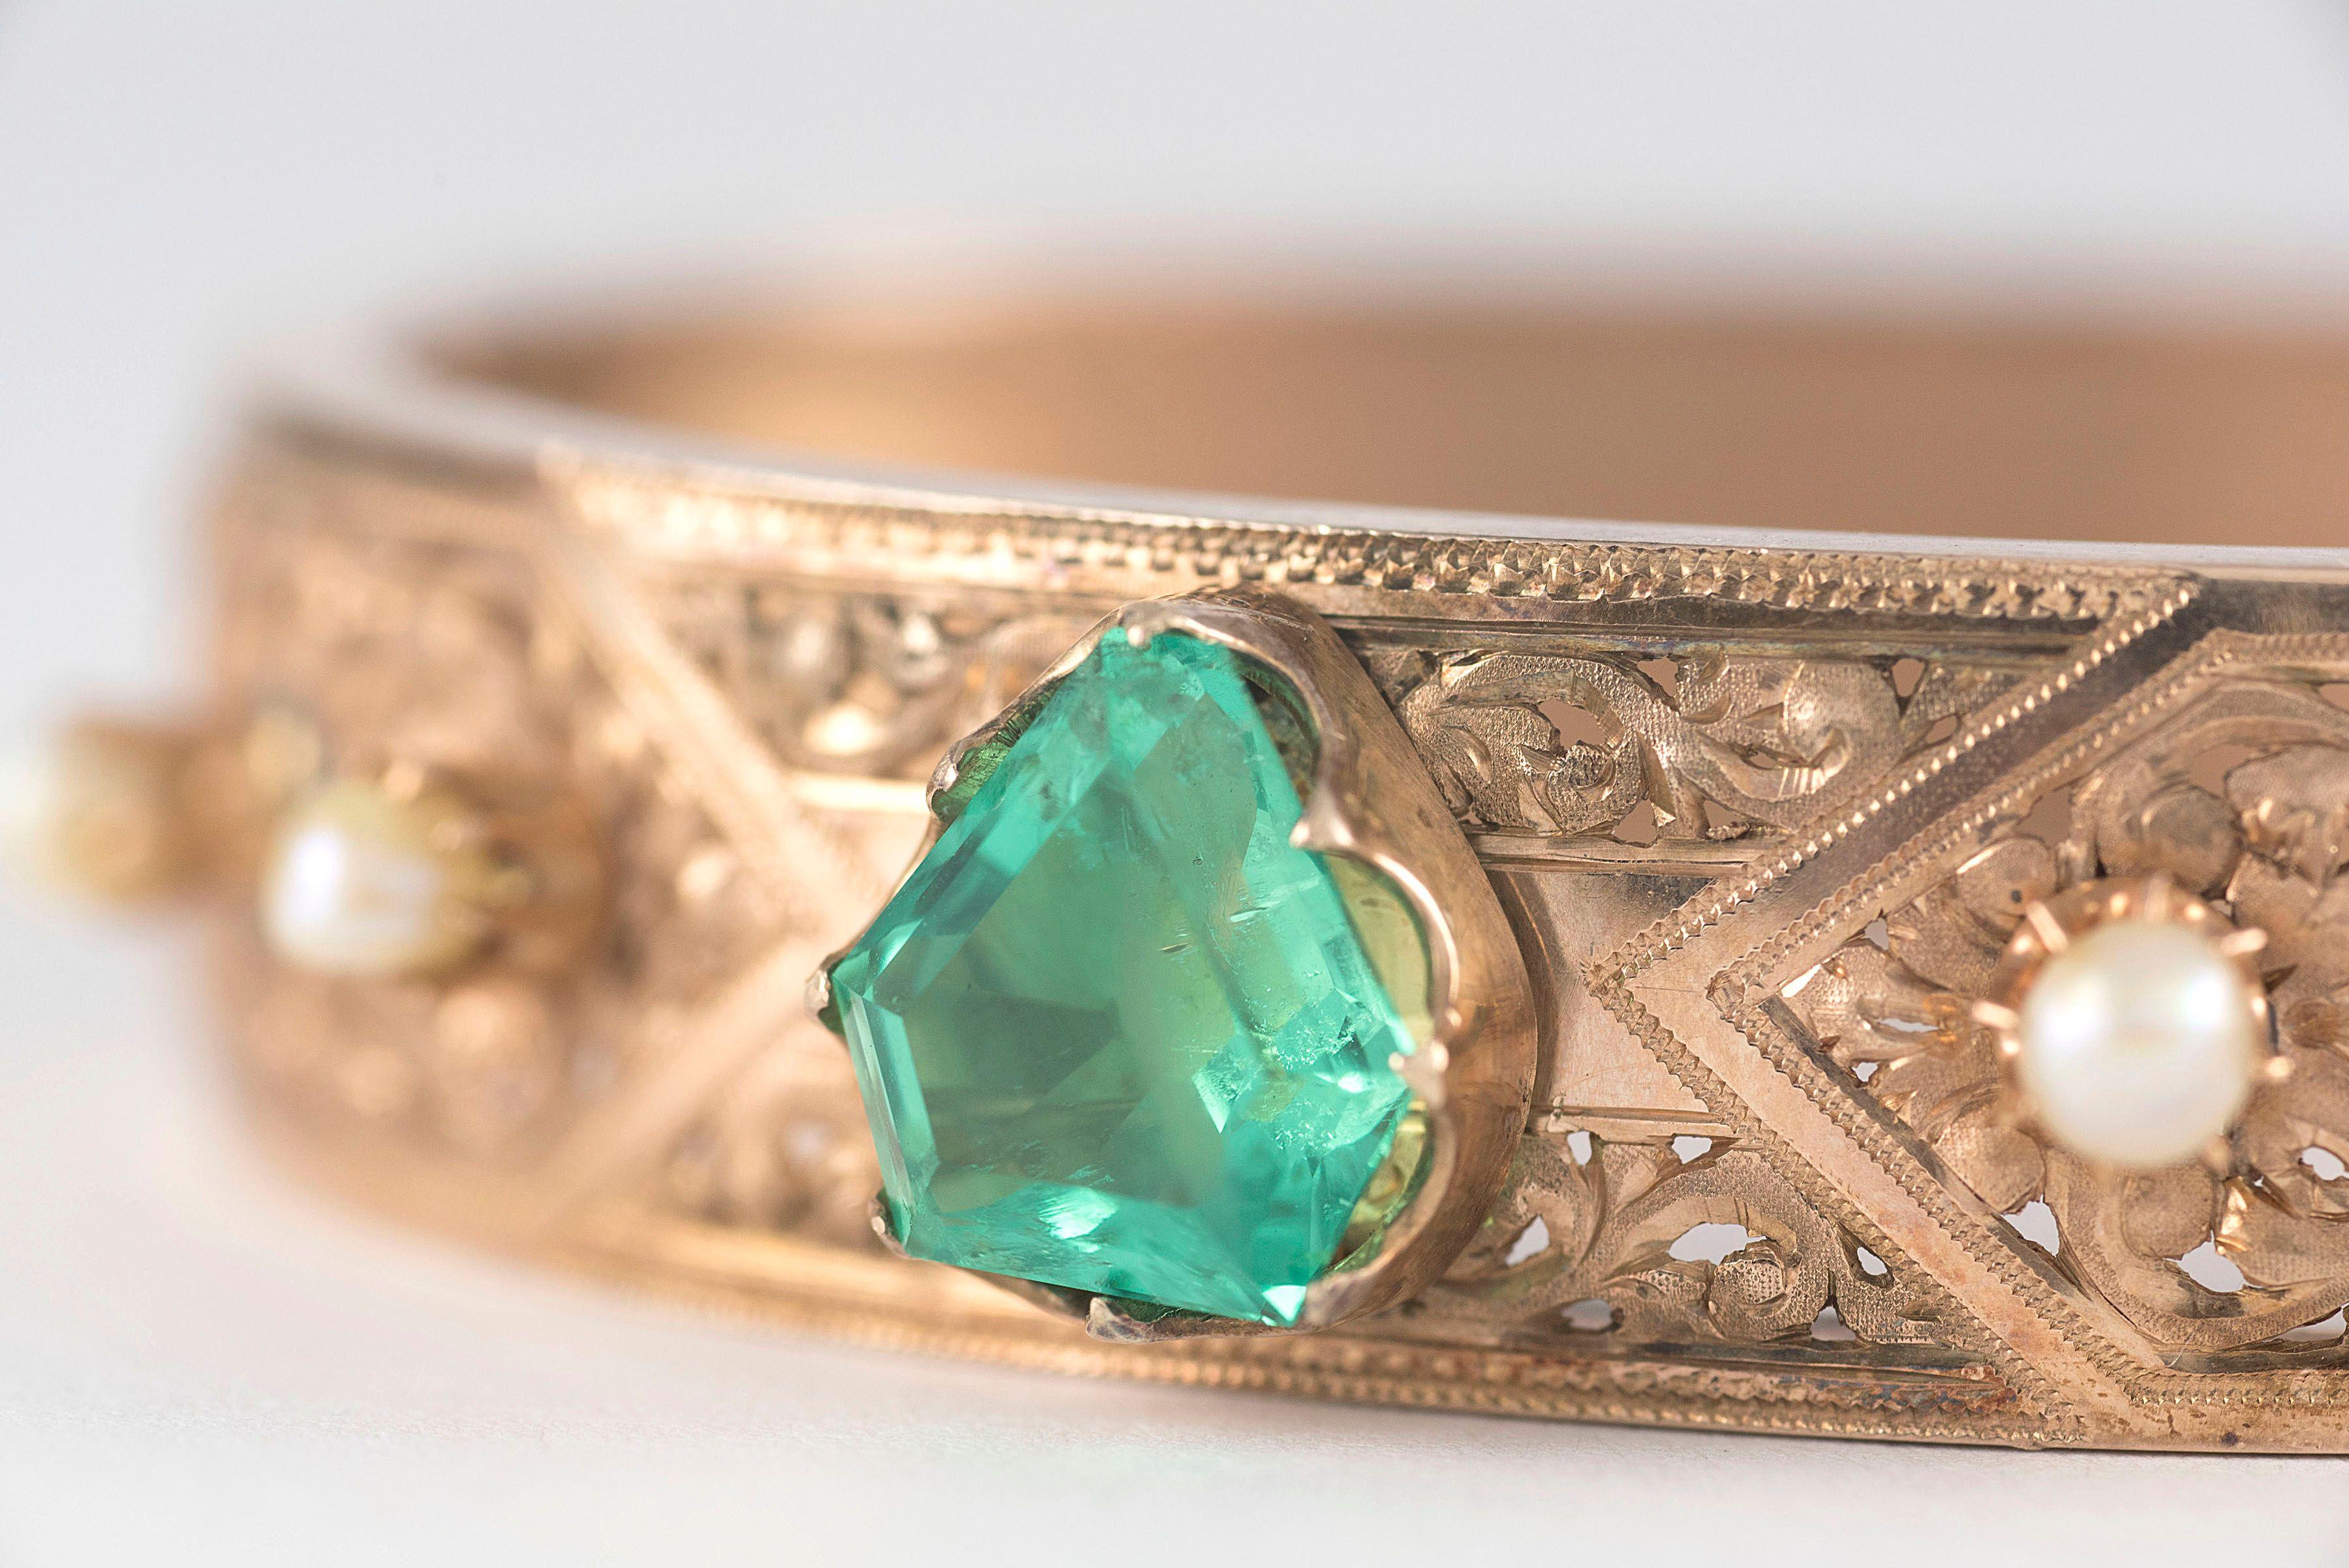 Réalisé en or rose 9 carats, ce bracelet bangle victorien ancien est conçu autour d'une émeraude naturelle non chauffée de Colombie mesurant 3,22 carats, entourée de quatre perles blanches naturelles et d'un perçage décoratif tourbillonnant